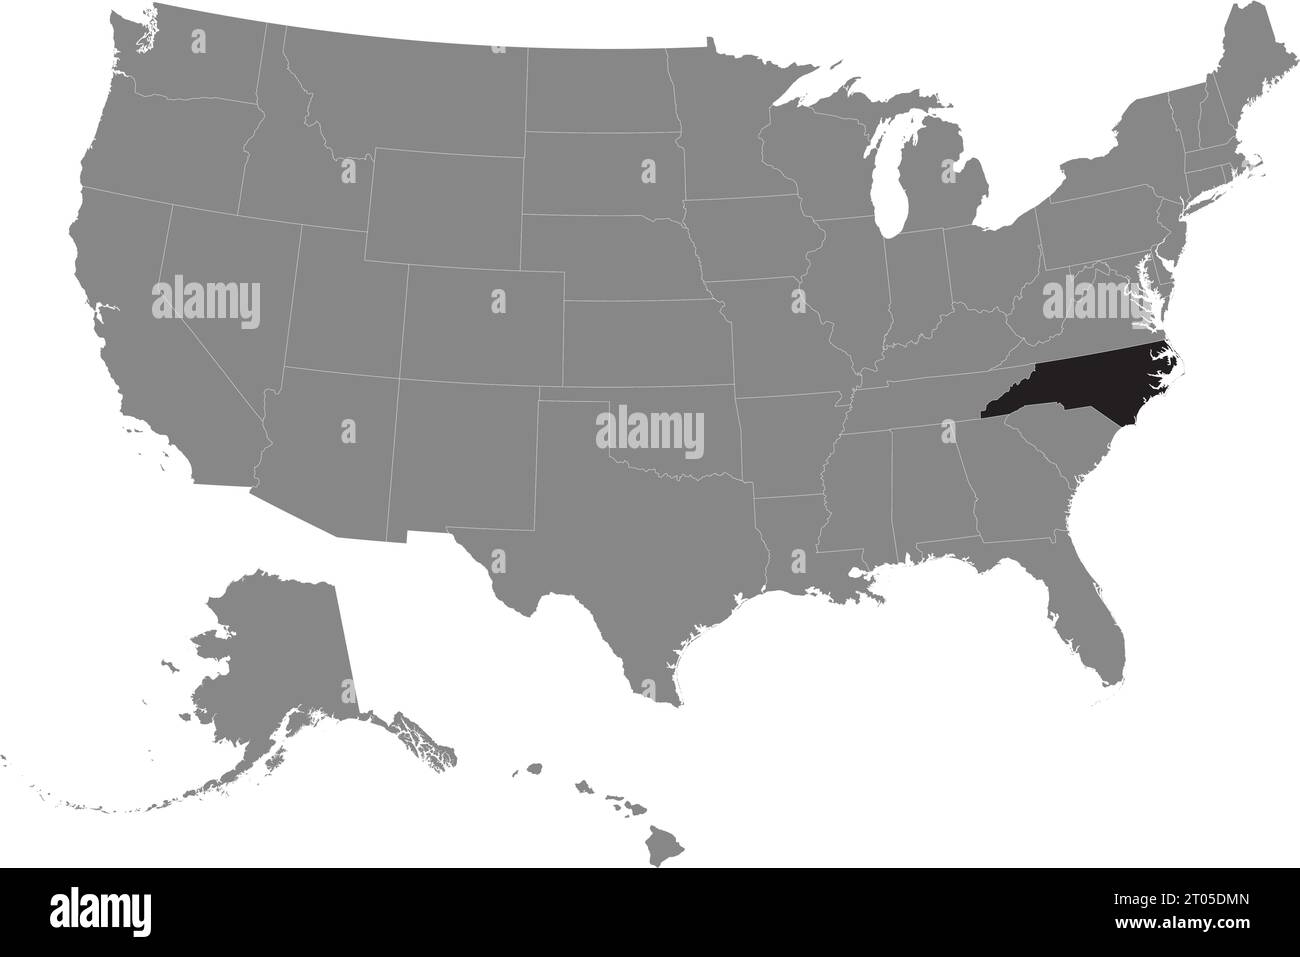 Schwarze CMYK-Bundeskarte von NORTH CAROLINA in detaillierter grauer, leerer politischer Karte der Vereinigten Staaten von Amerika auf transparentem Hintergrund Stock Vektor